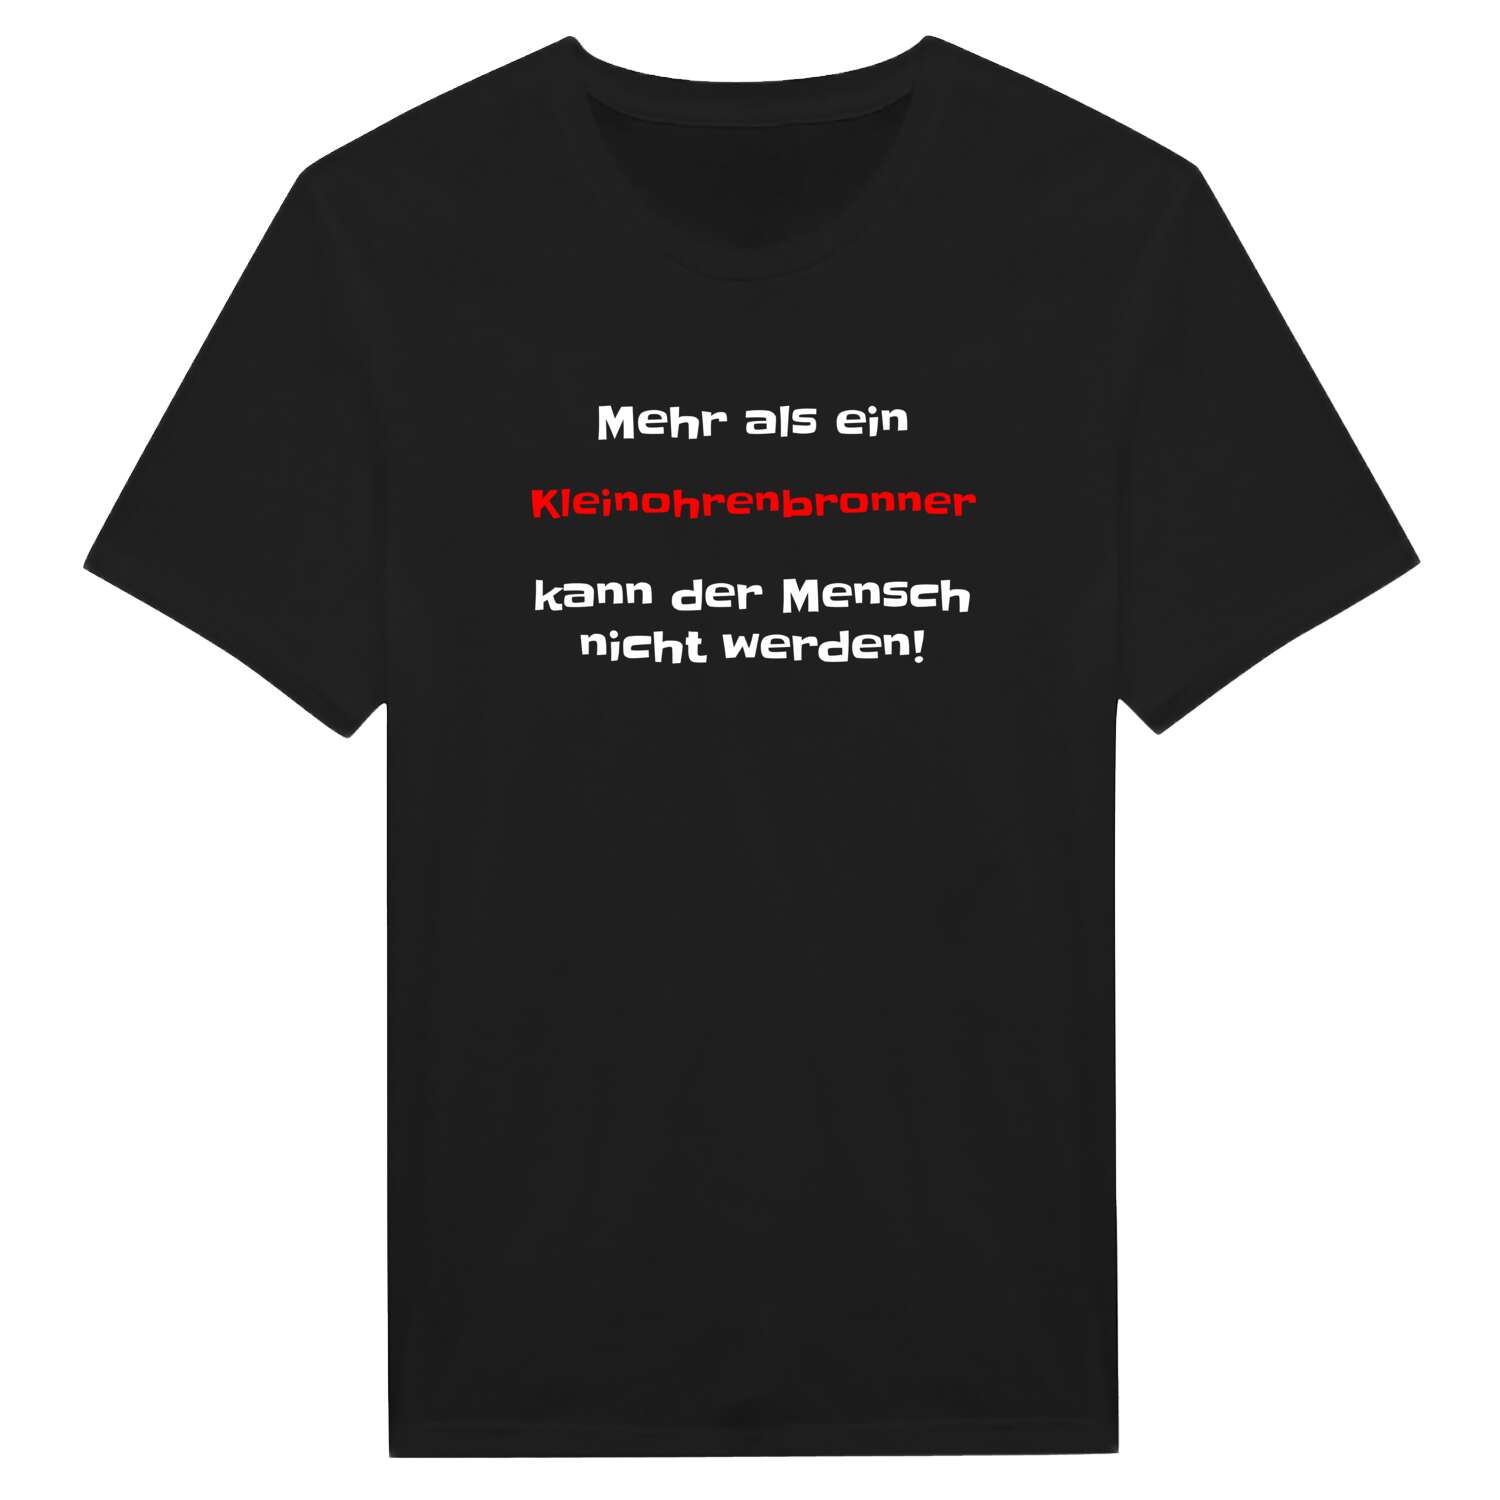 Kleinohrenbronn T-Shirt »Mehr als ein«